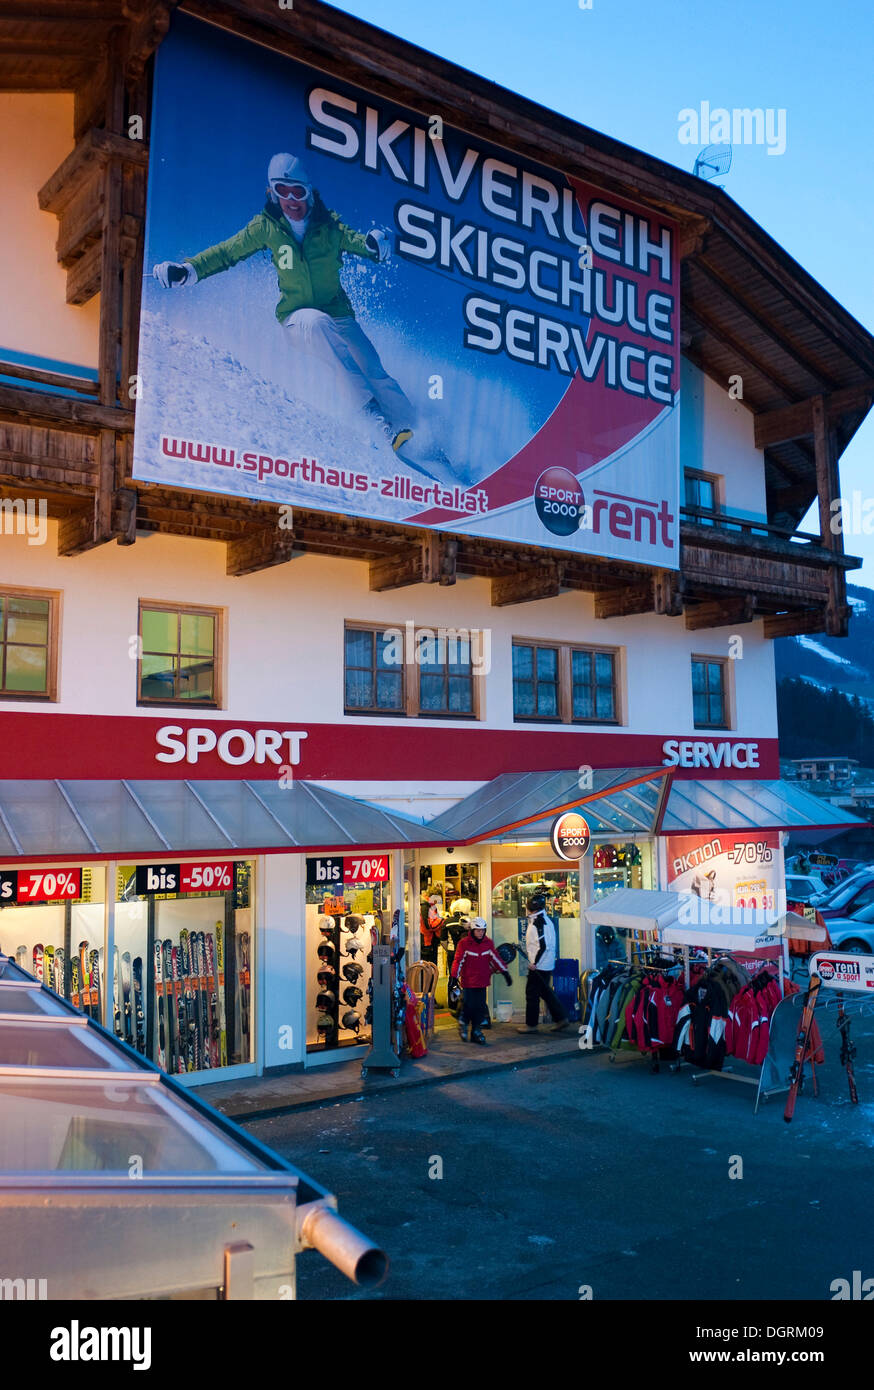 Location de ski Skiverleih Skischule, école de ski, service, poster, Autriche, Europe, Fuegen Banque D'Images